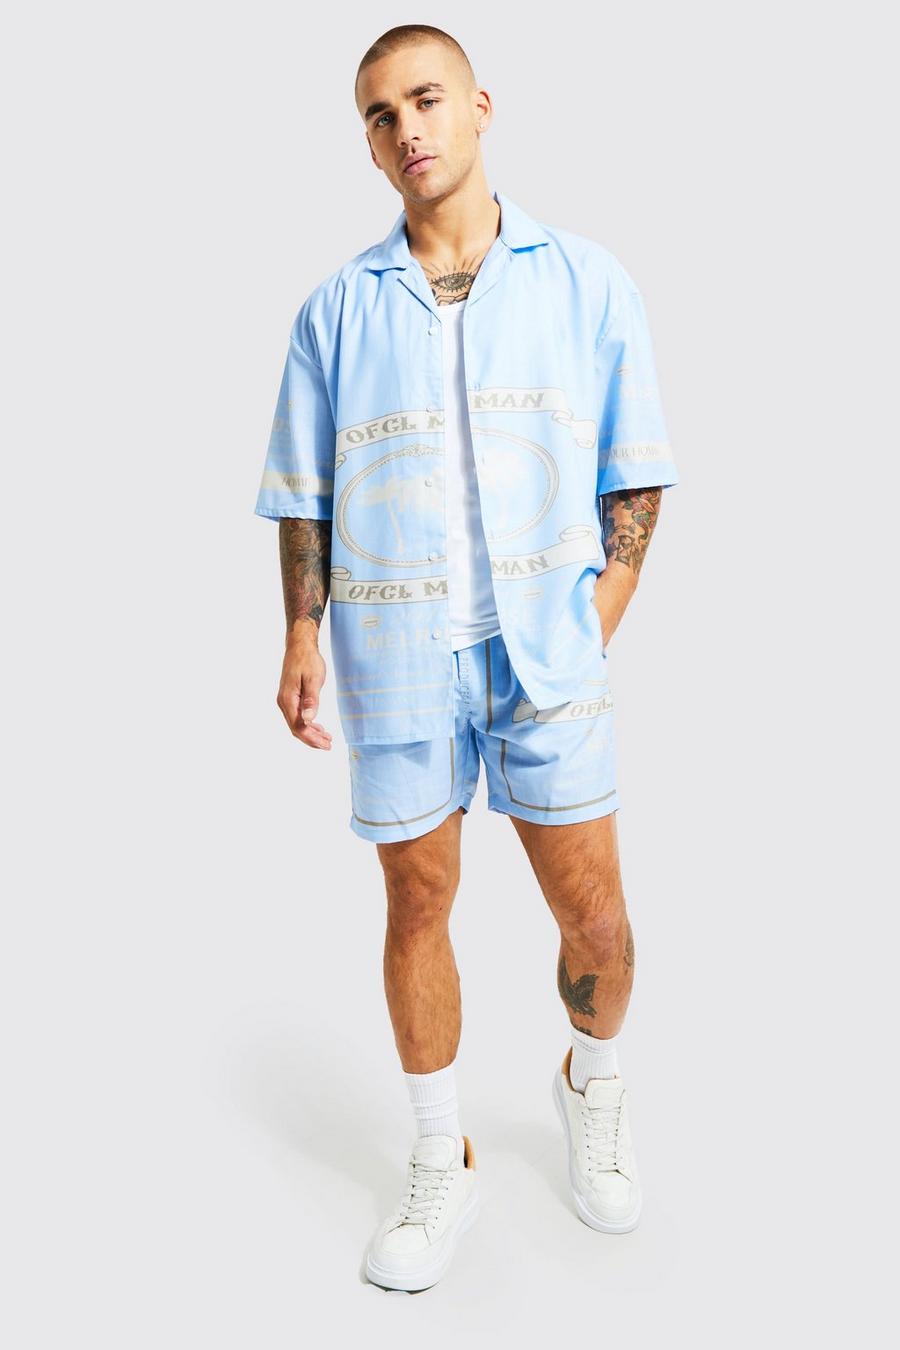 Conjunto de pantalón corto y camisa recta con estampado gráfico MAN Official, Blue azzurro